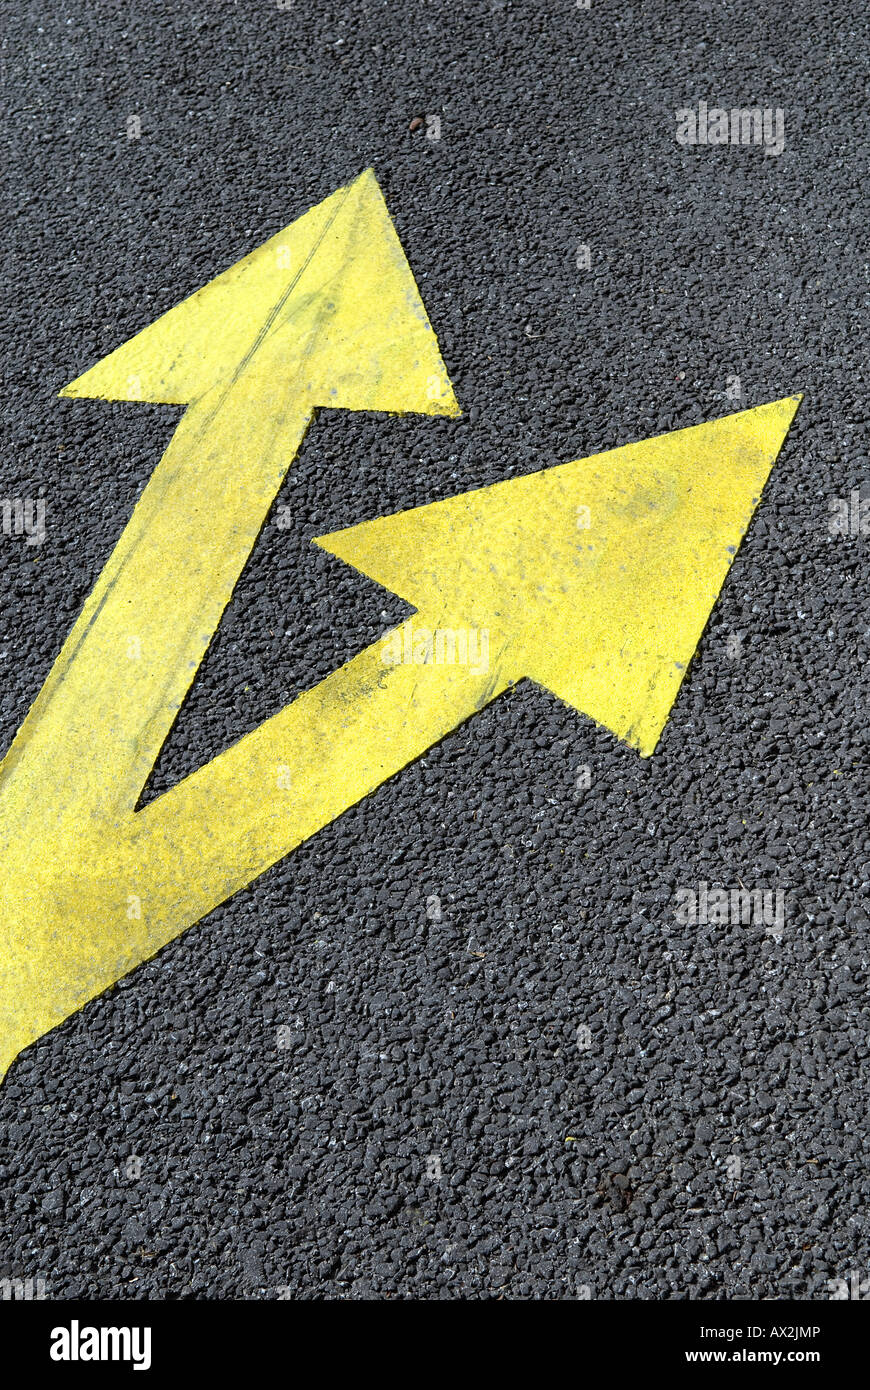 Strada asfaltata gialla con frecce di direzione Foto Stock